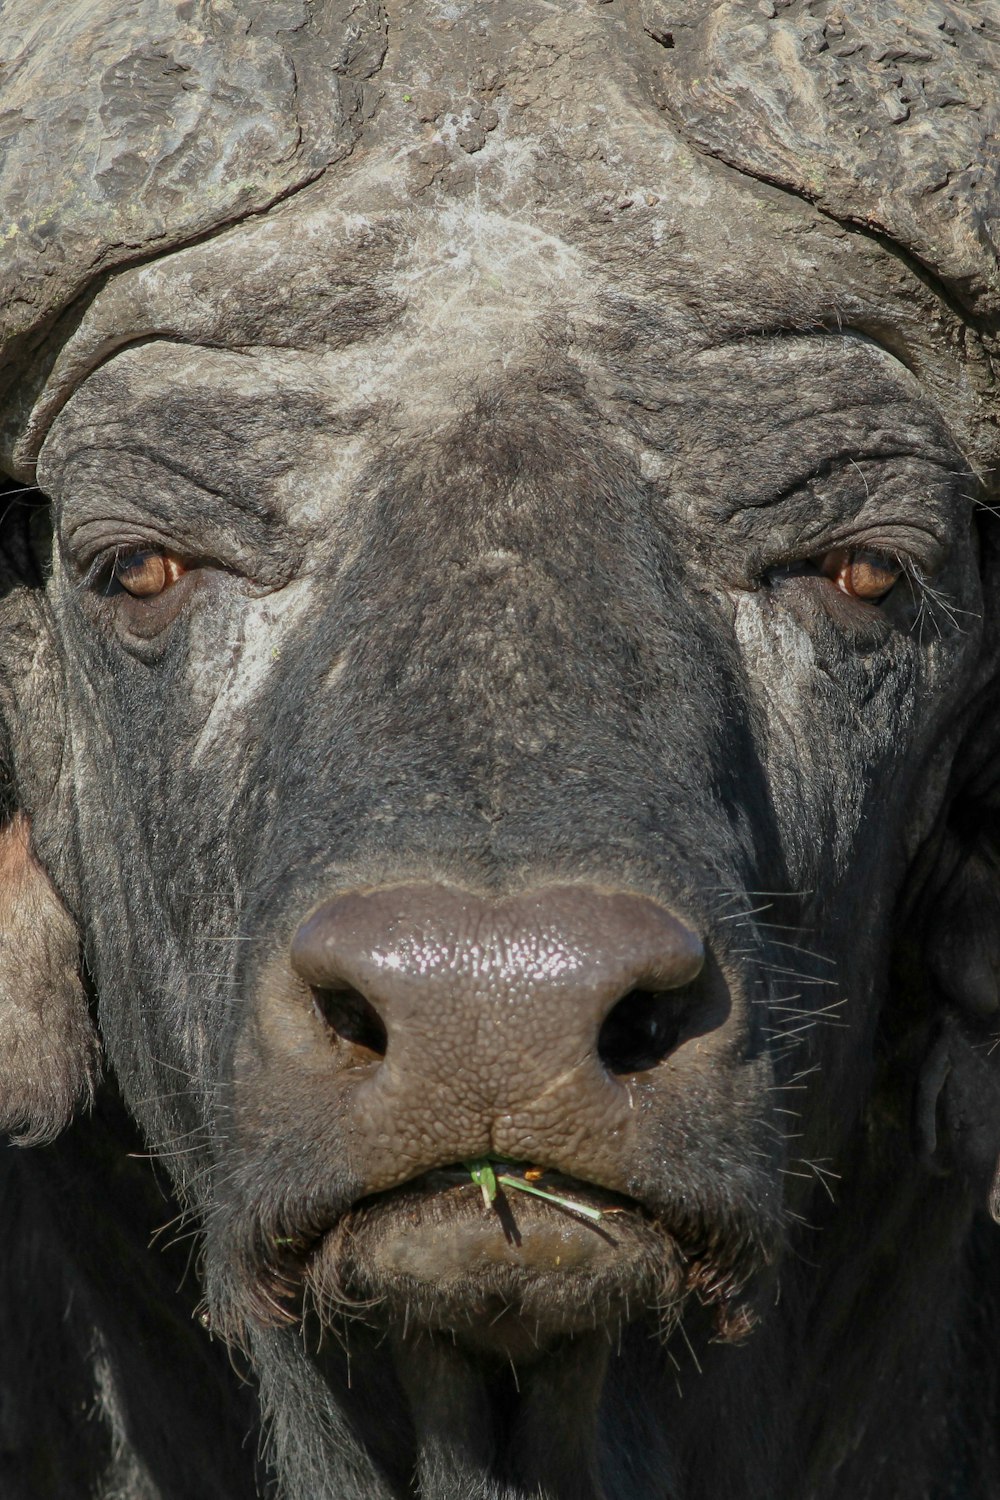 búfalo de água preta no campo de grama verde durante o dia